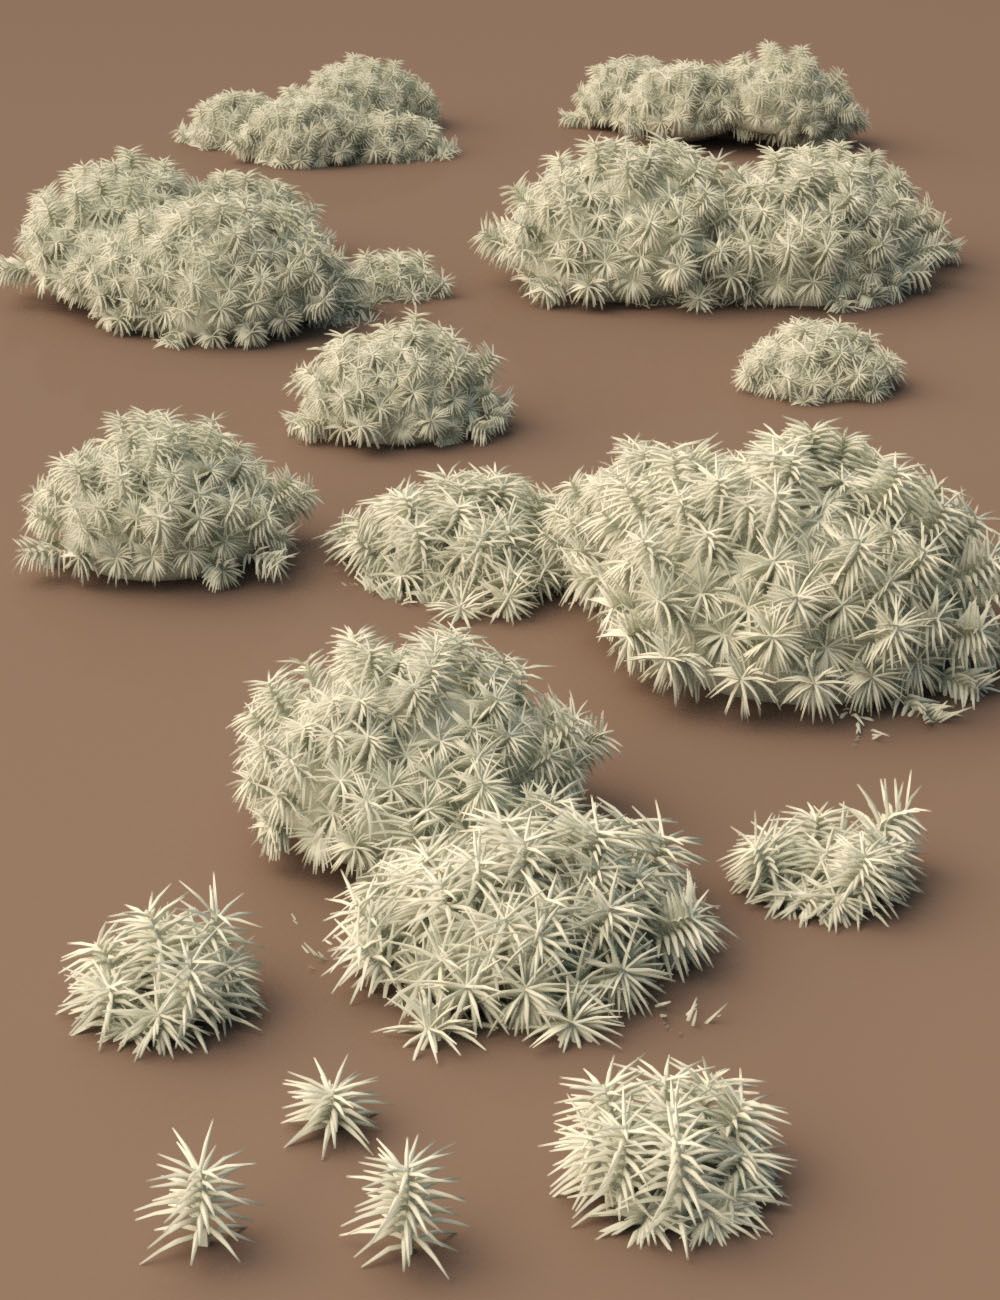 Tiny Plants vol 2 - Moss by: MartinJFrost, 3D Models by Daz 3D